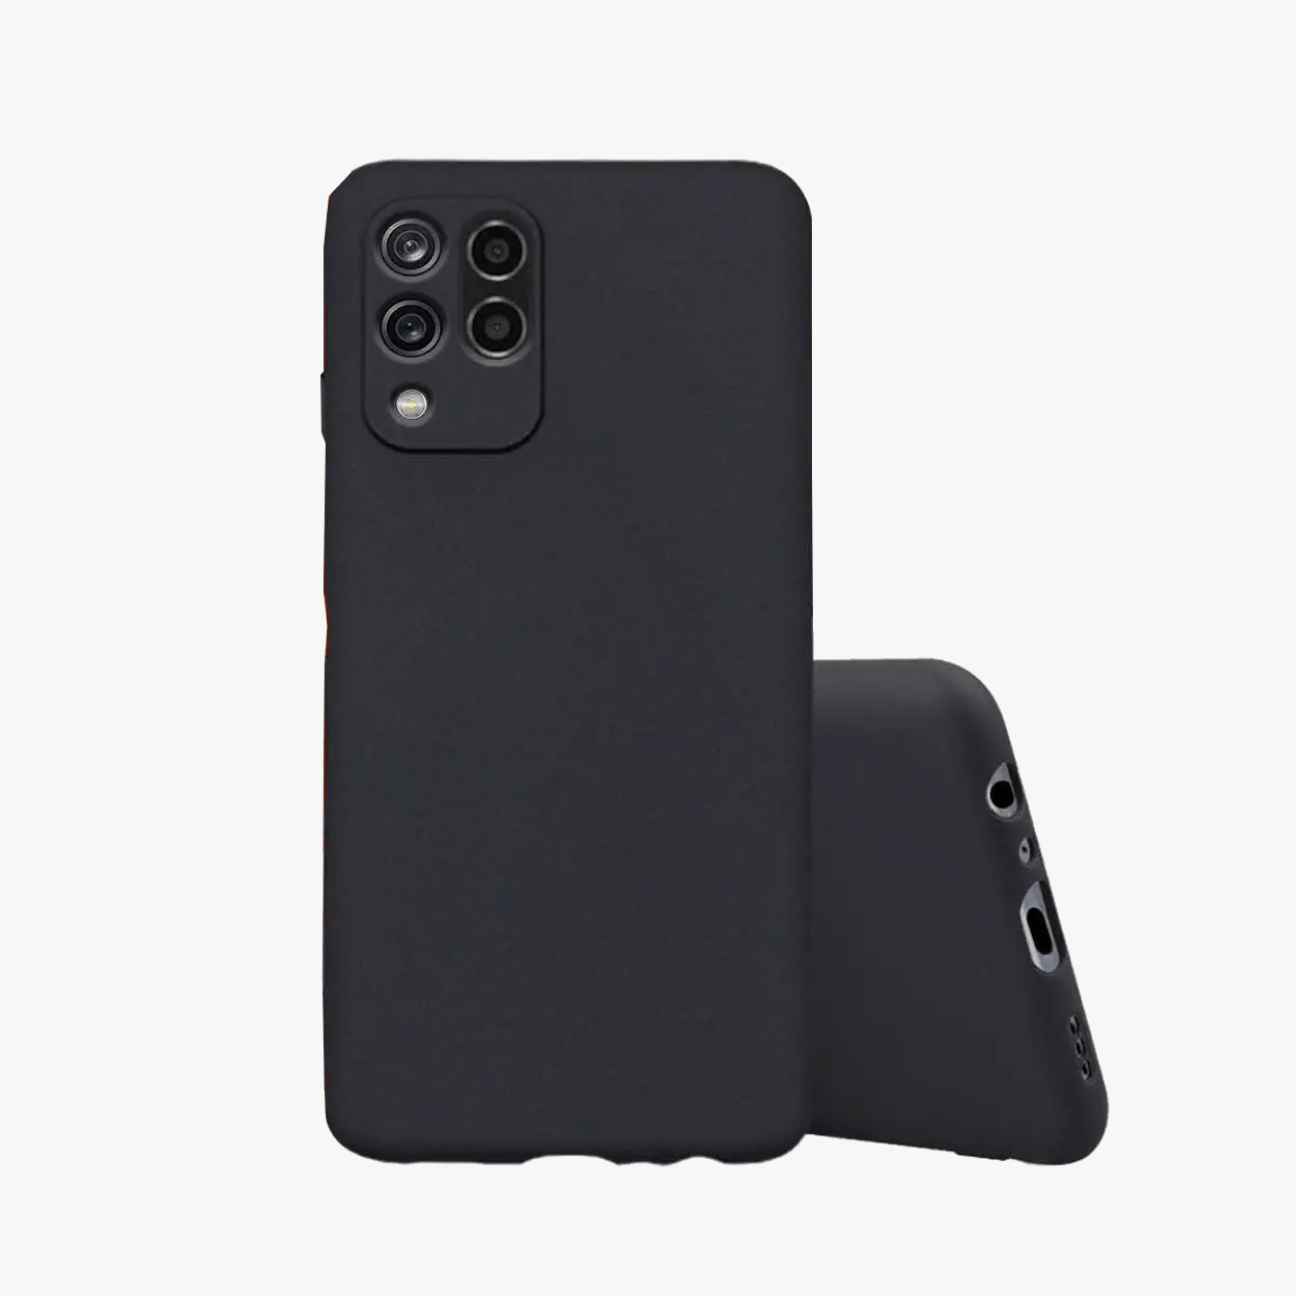 Xiaomi Redmi 9 Prime (2020) Black Soft Silicone Phone Case